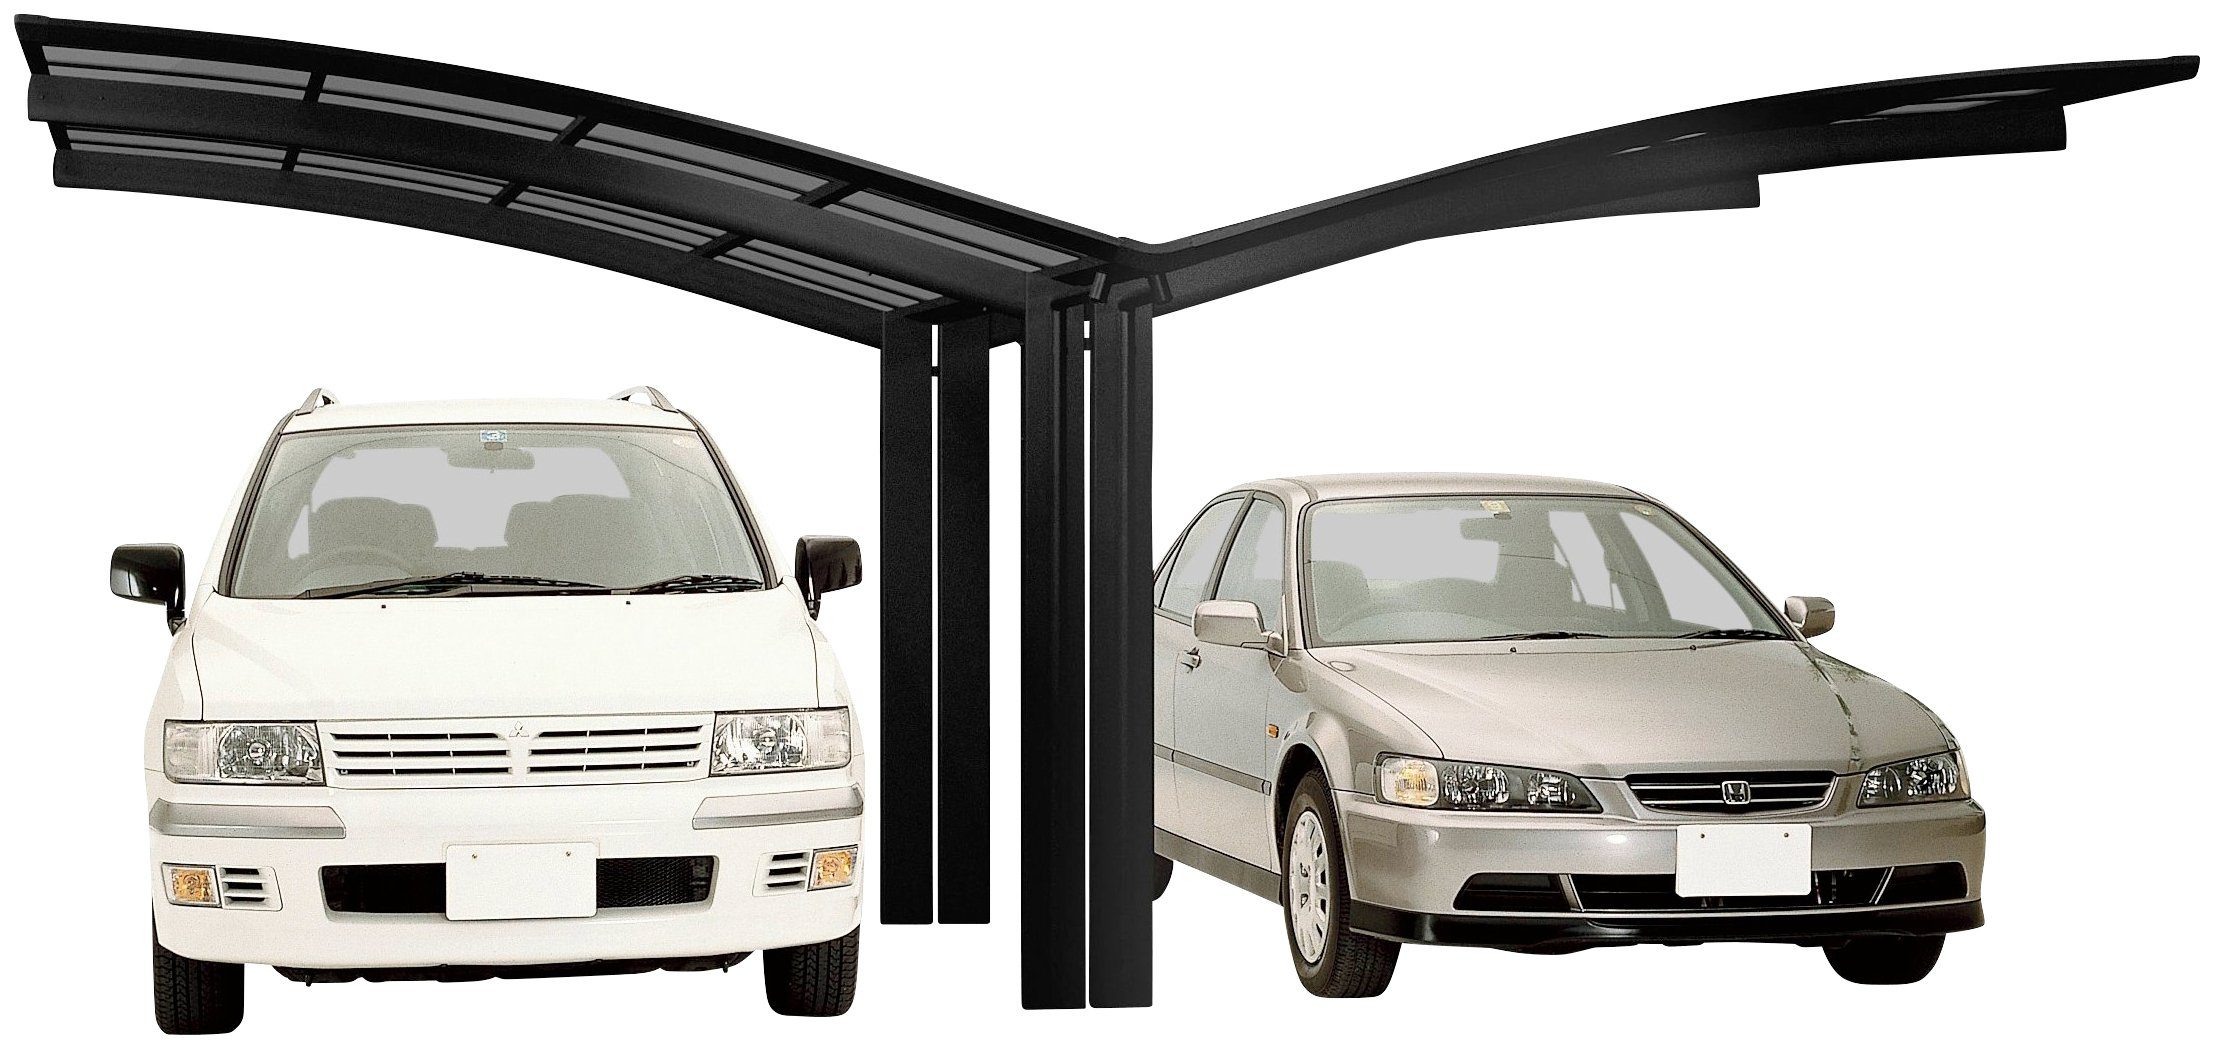 Doppelcarport cm, cm 240 BxT: Ximax 543x495 Y-schwarz, Aluminium 80 Typ Einfahrtshöhe, Portoforte